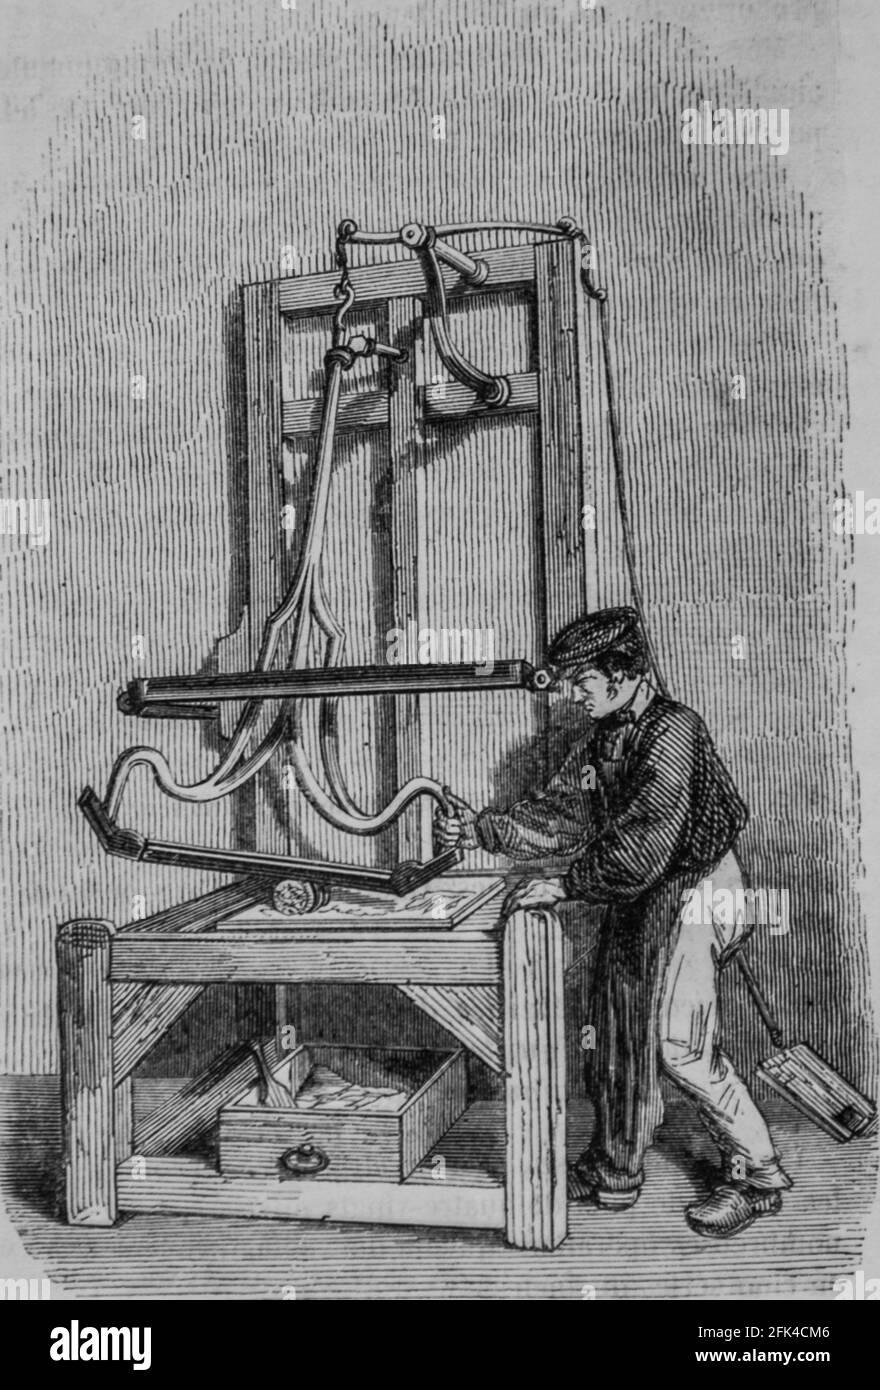 industrie des aiguilles en france, le magazin pittoresque, editeur edouard charton, 1860 Foto Stock